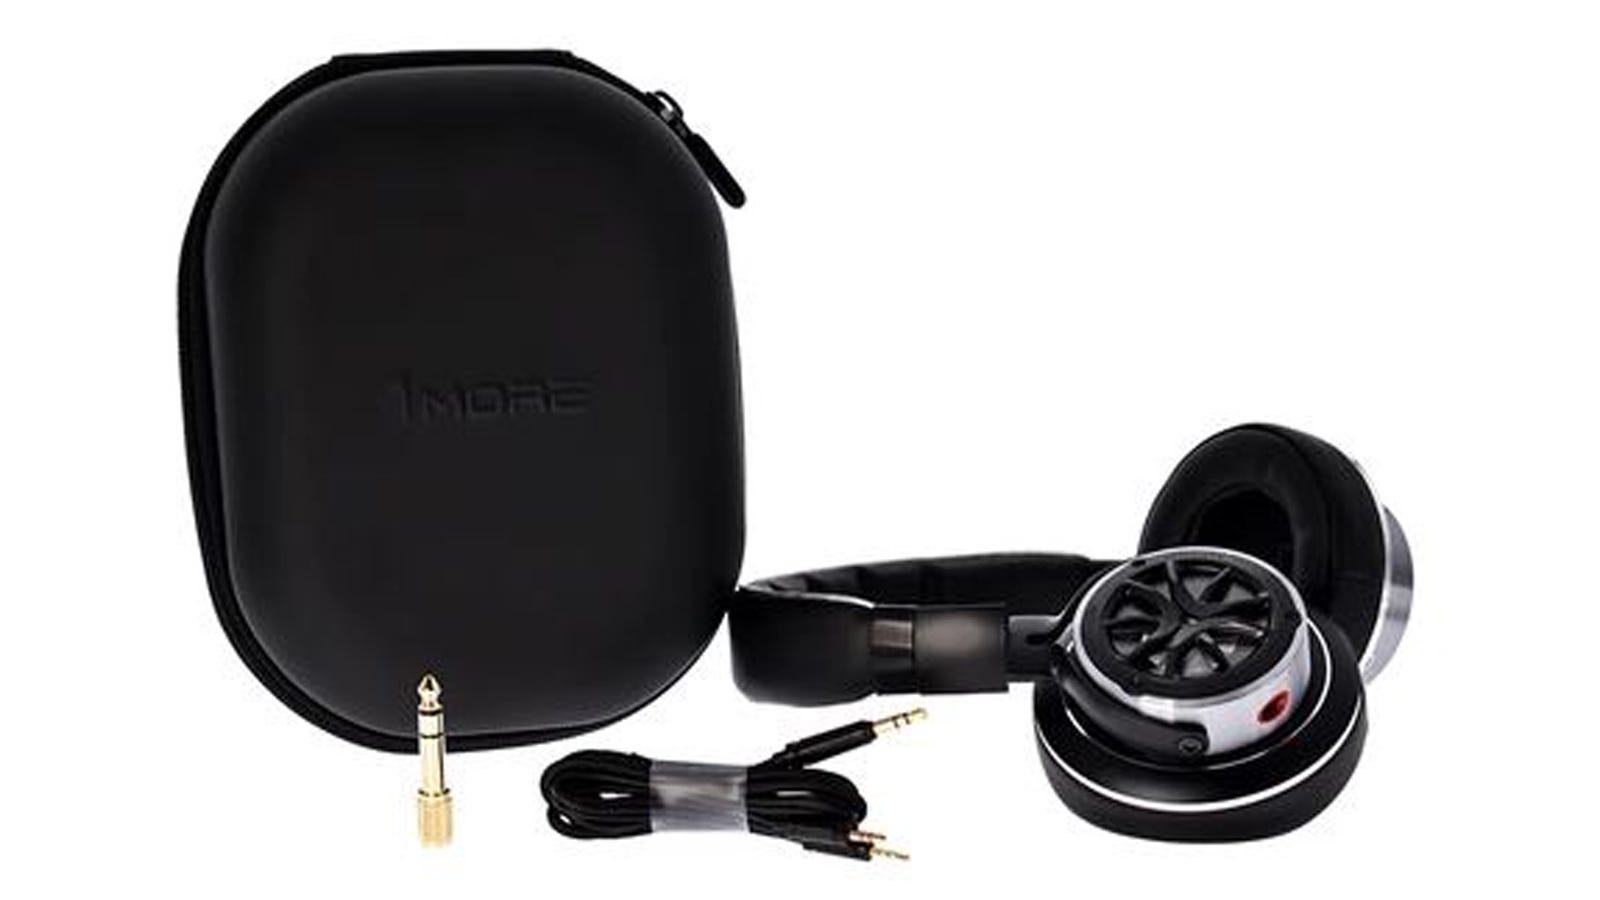 Gambar kabel headphone dan tas jinjing